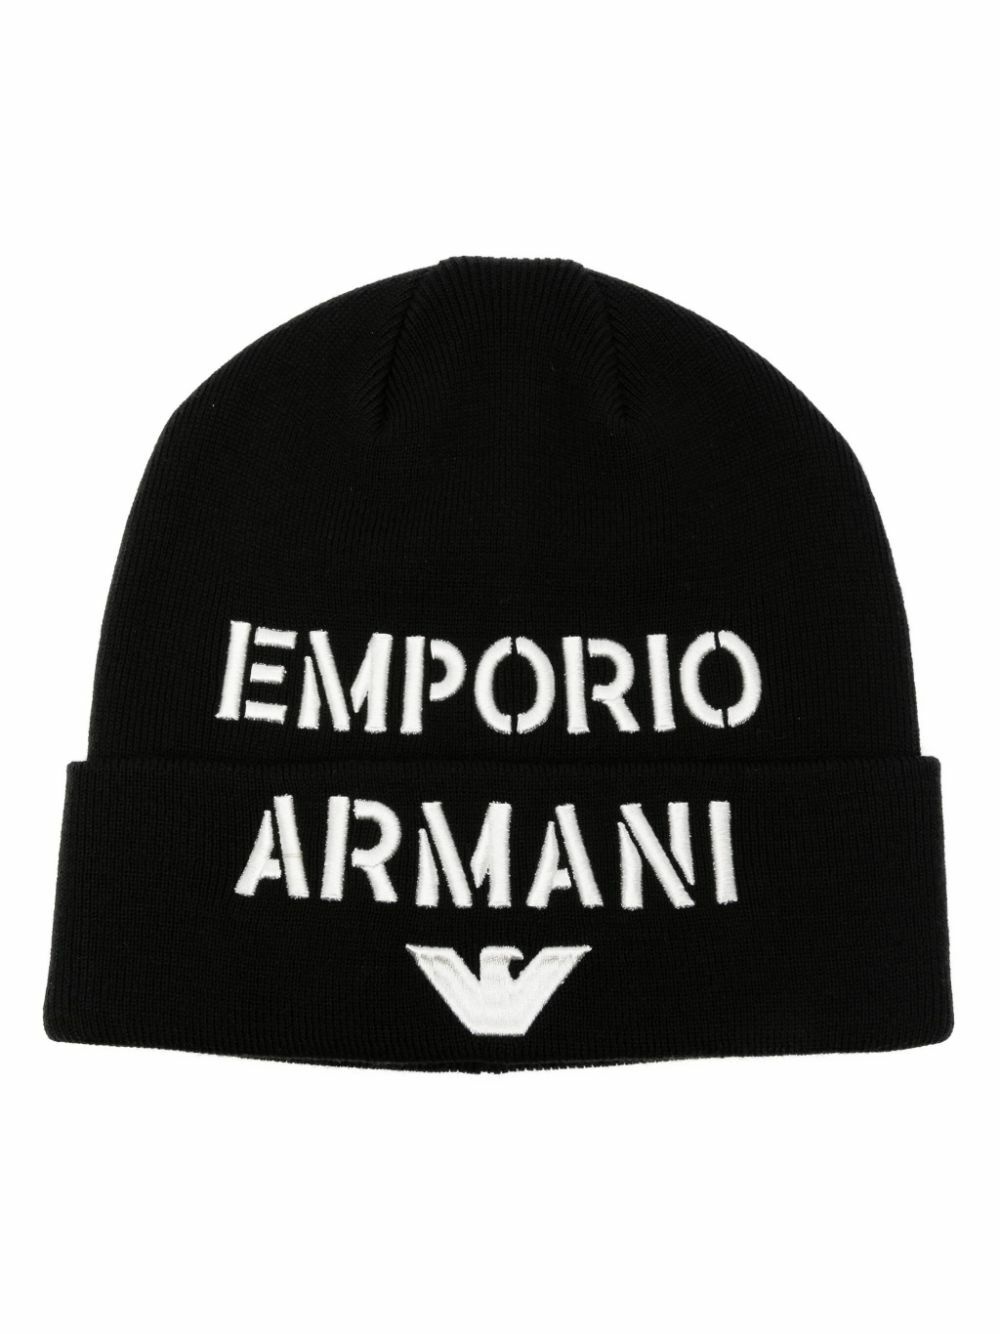 Photo: EMPORIO ARMANI - Logo Wool Blend Beanie